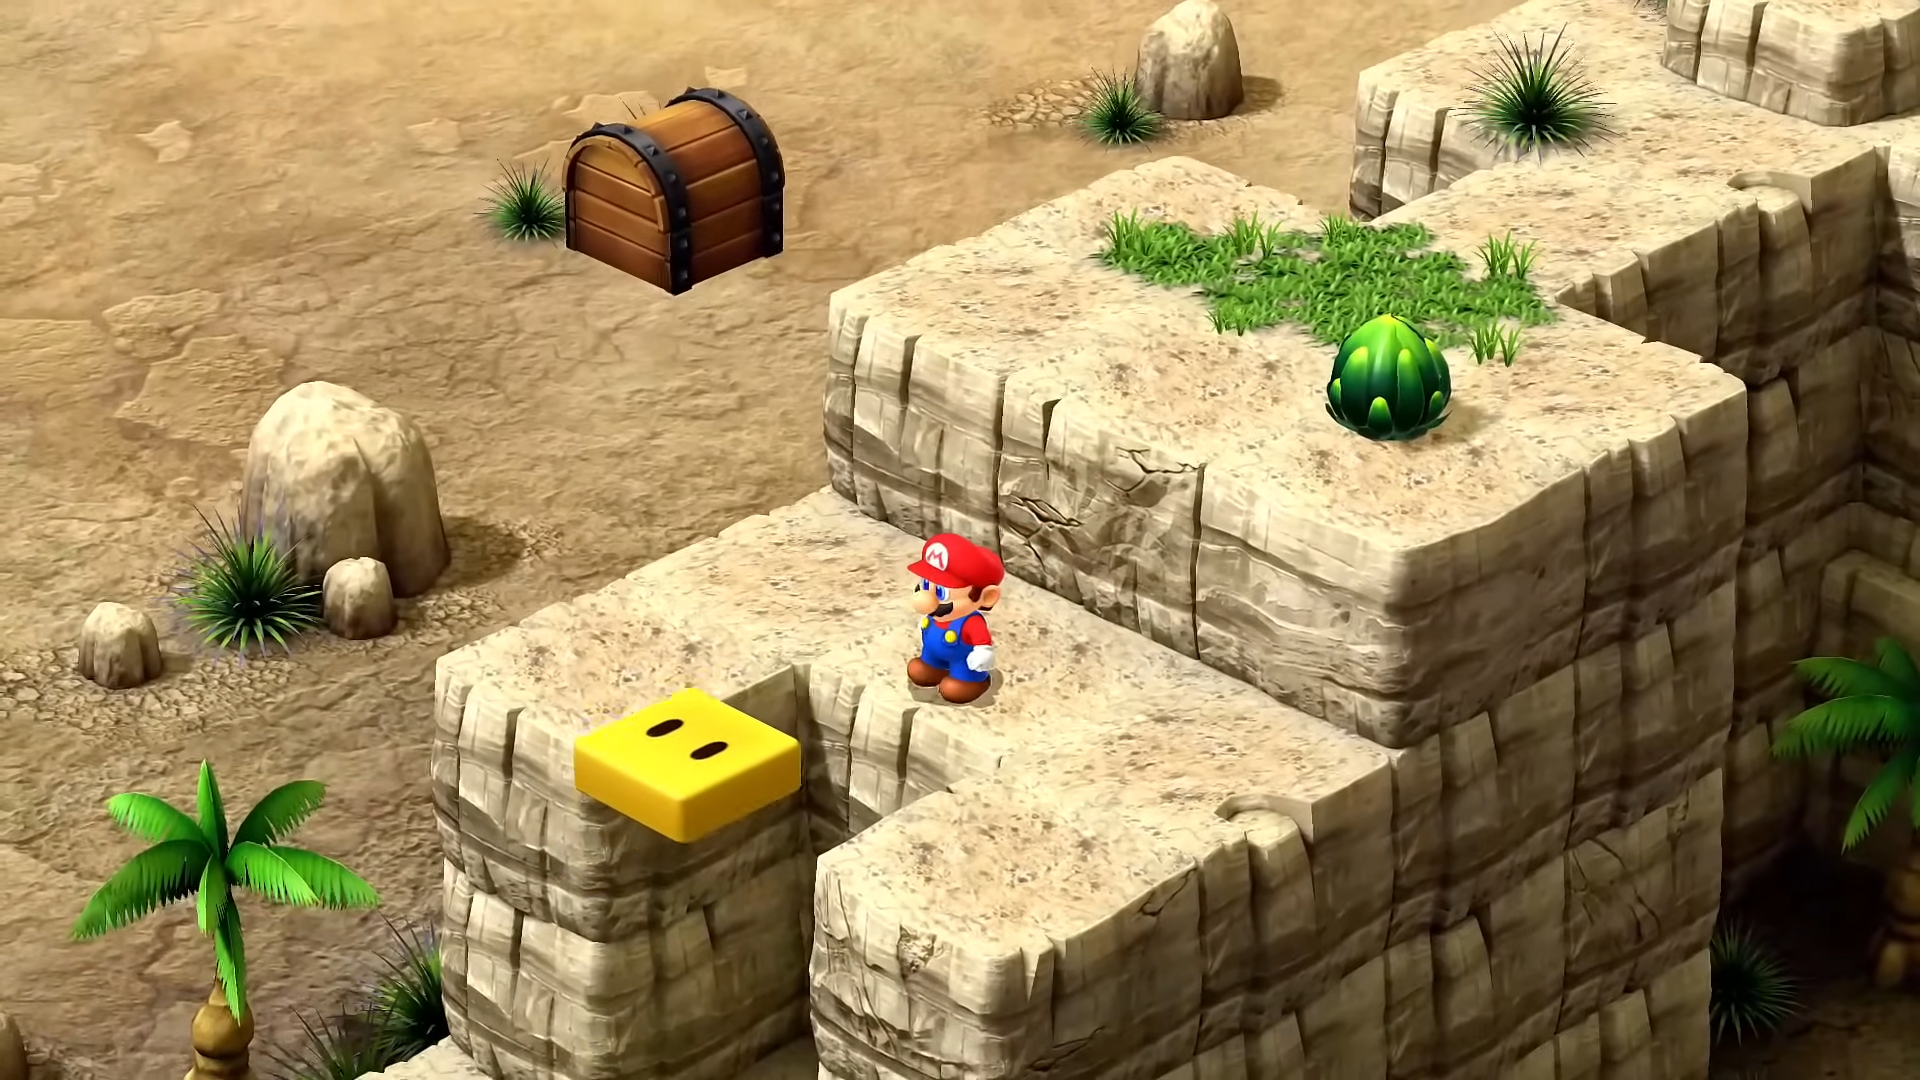 Mario in a desert.